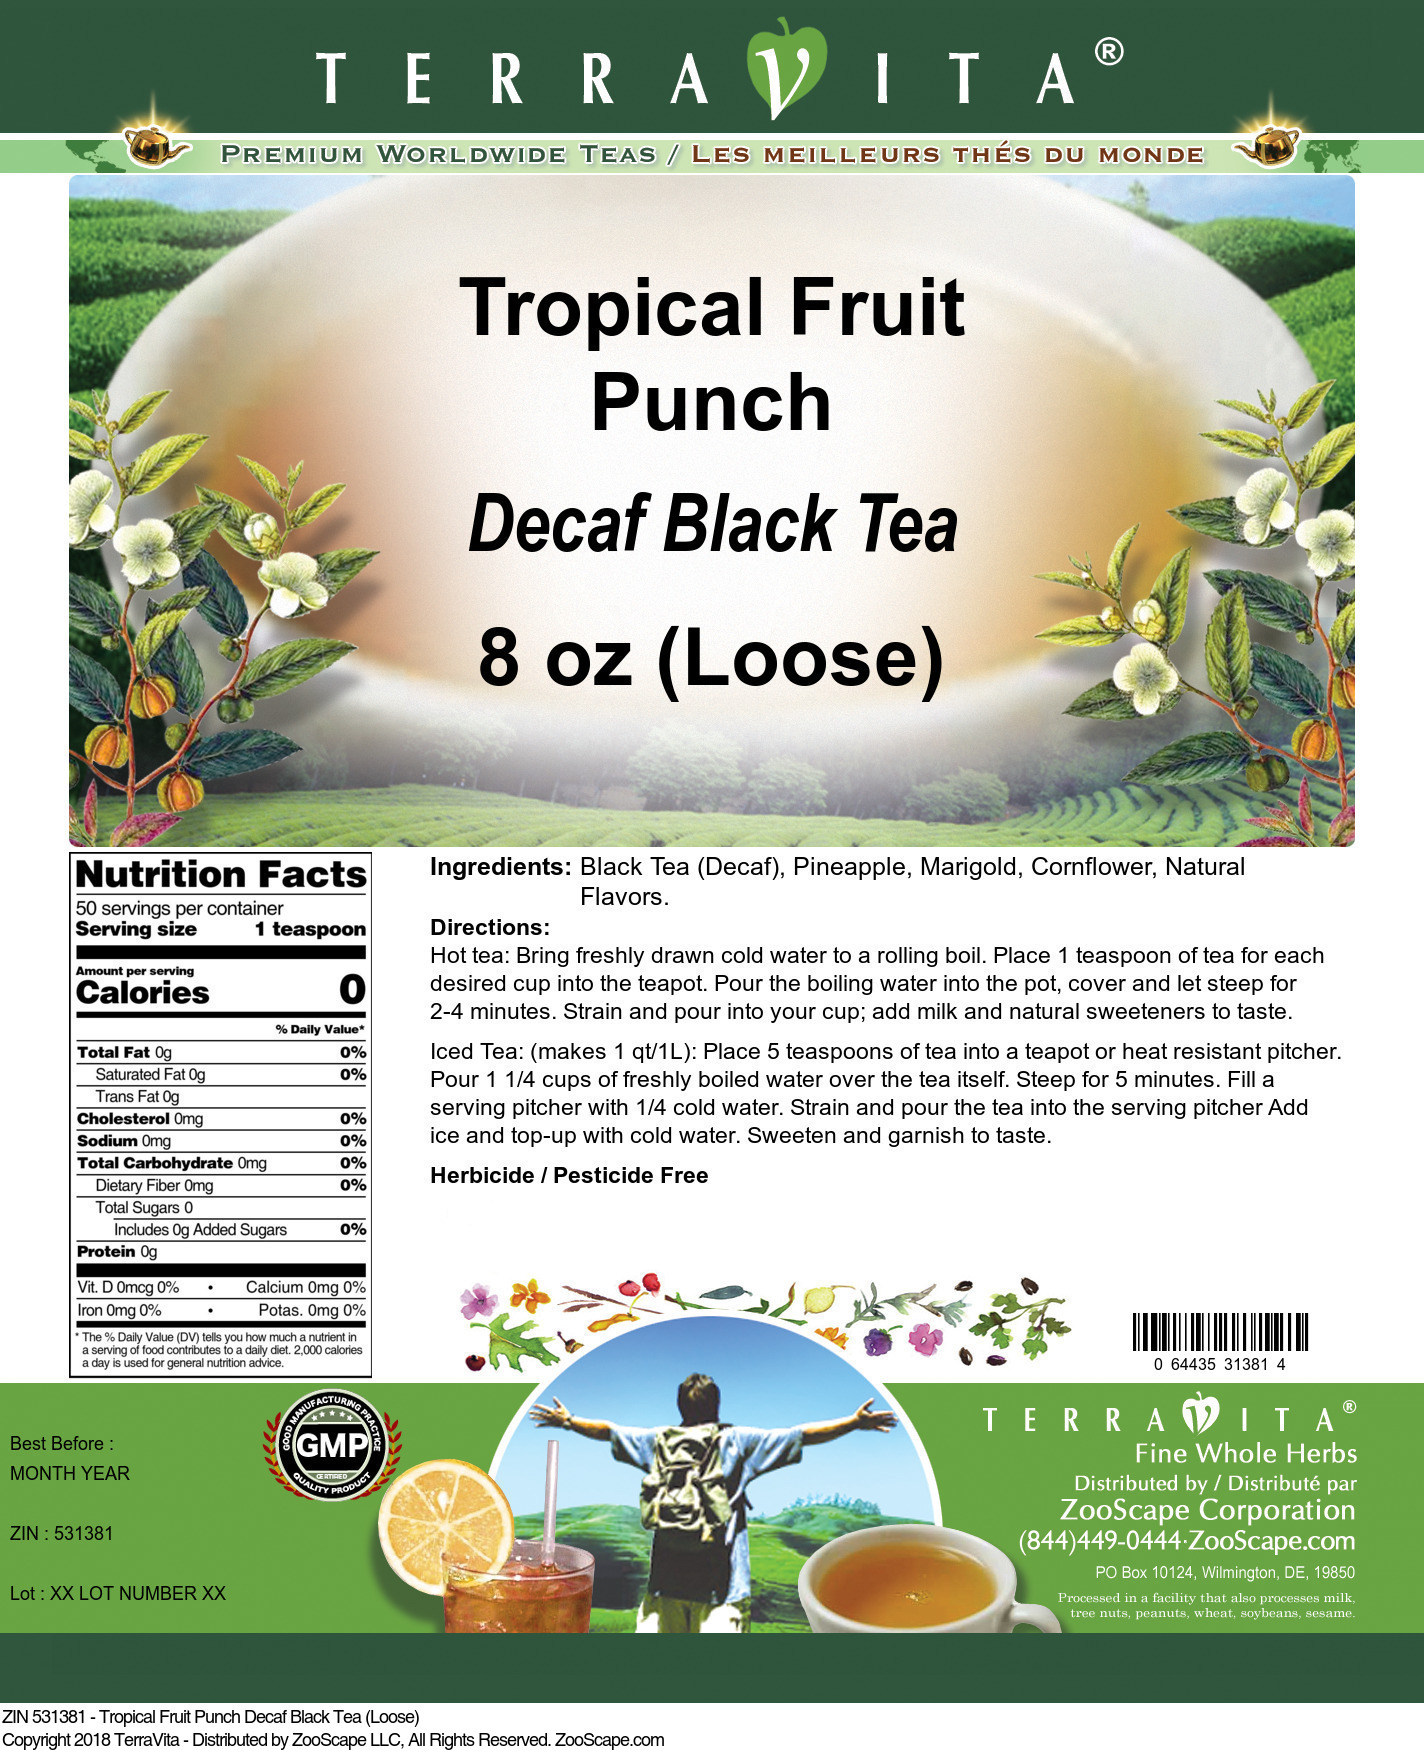 Tropical Fruit Punch Decaf Black Tea (Loose) - Label